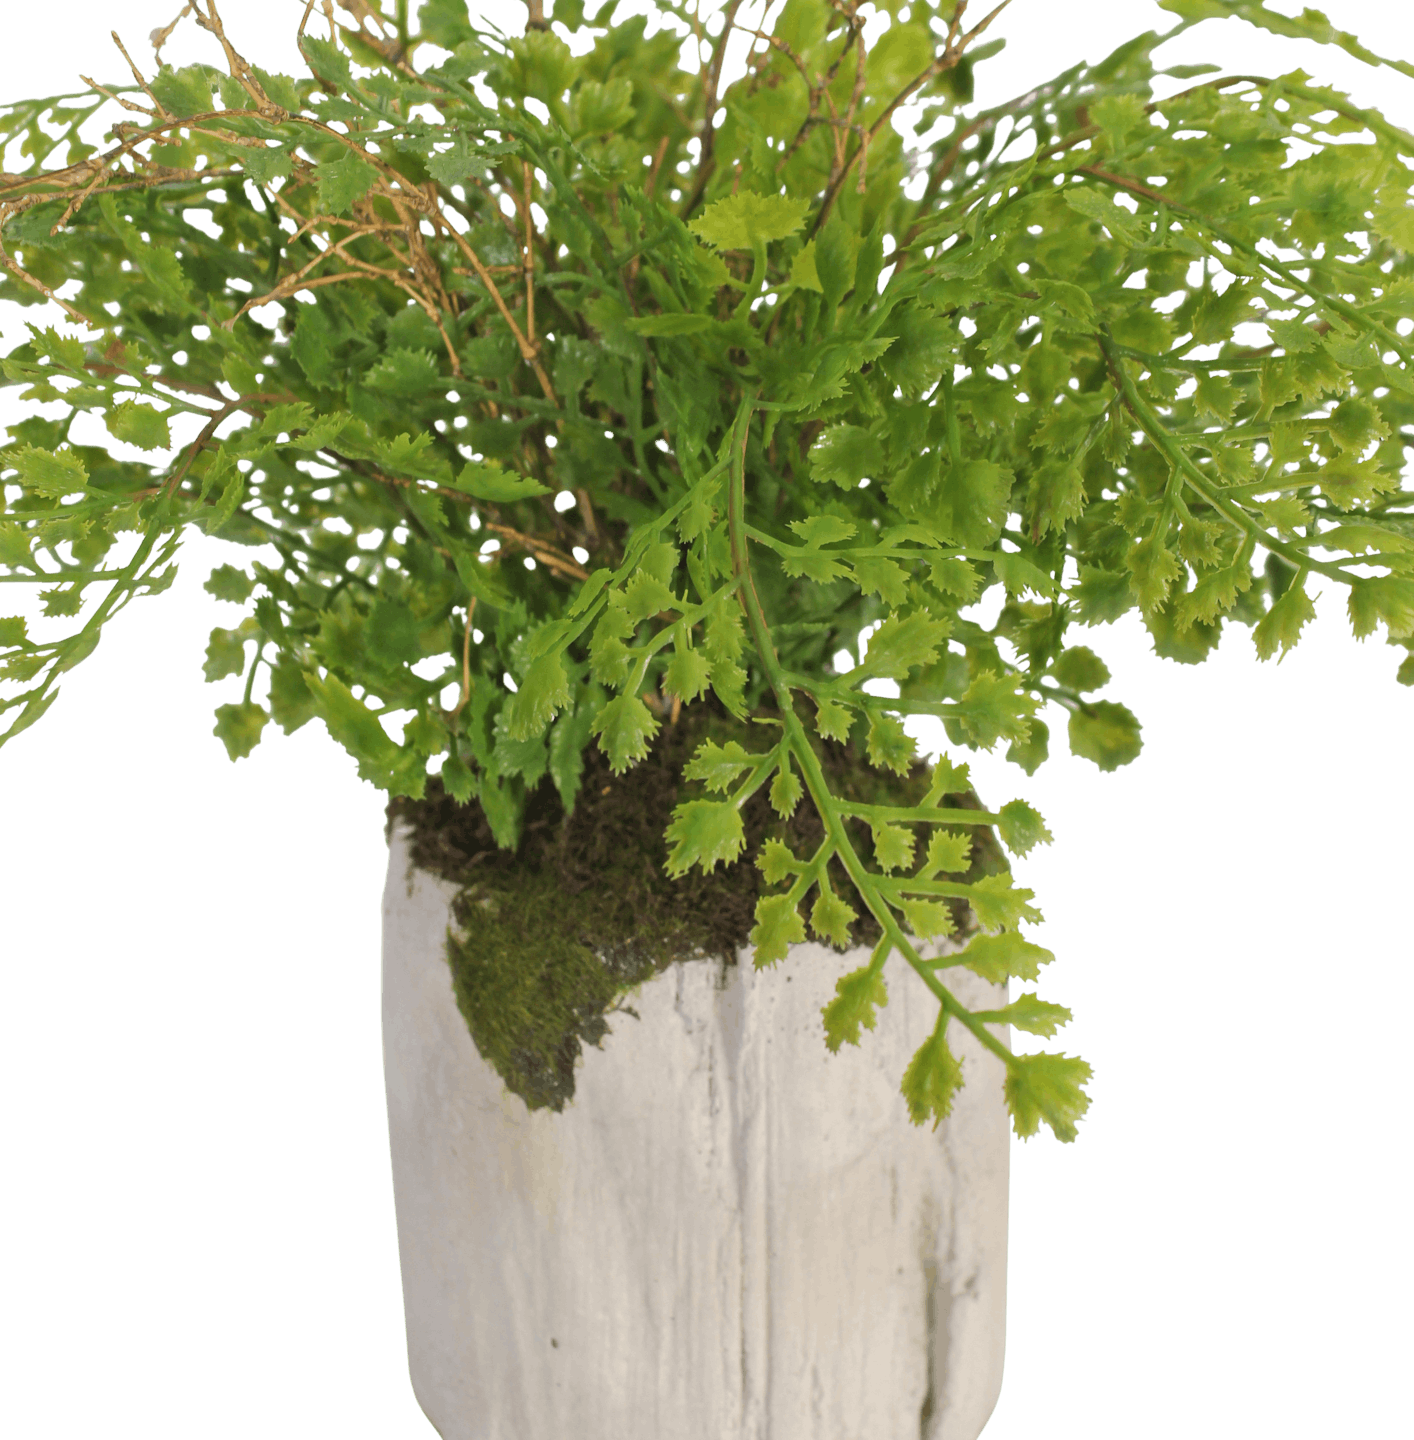 Faux maidenhair plant foliage